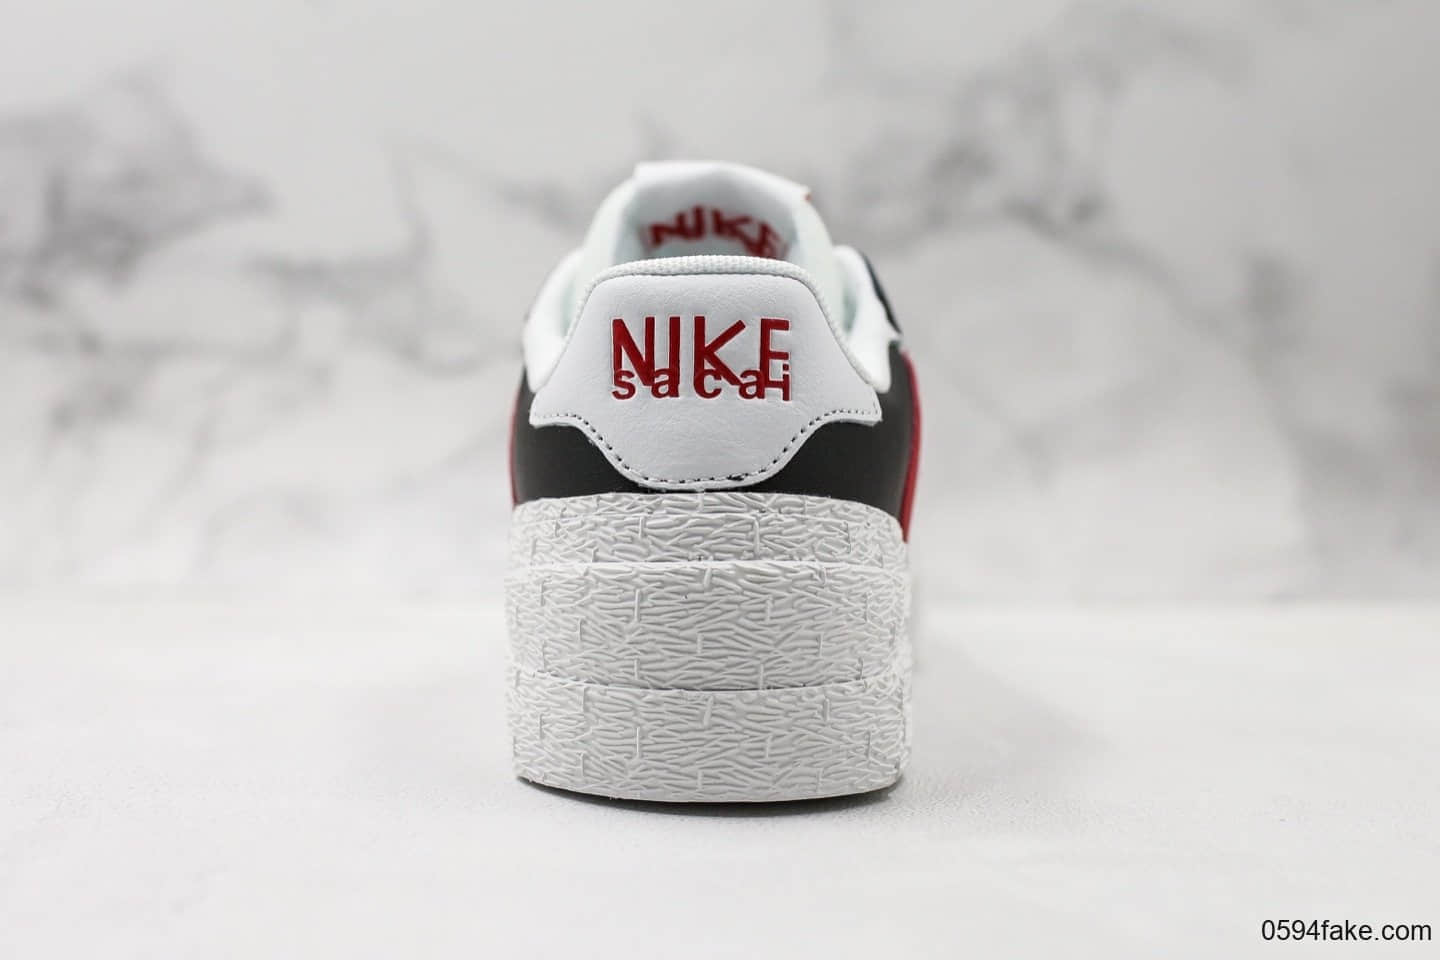 耐克Sacai X Nike Blazer High公司级版本联名开拓者解构低帮板鞋黑白红配色原装抽屉礼盒